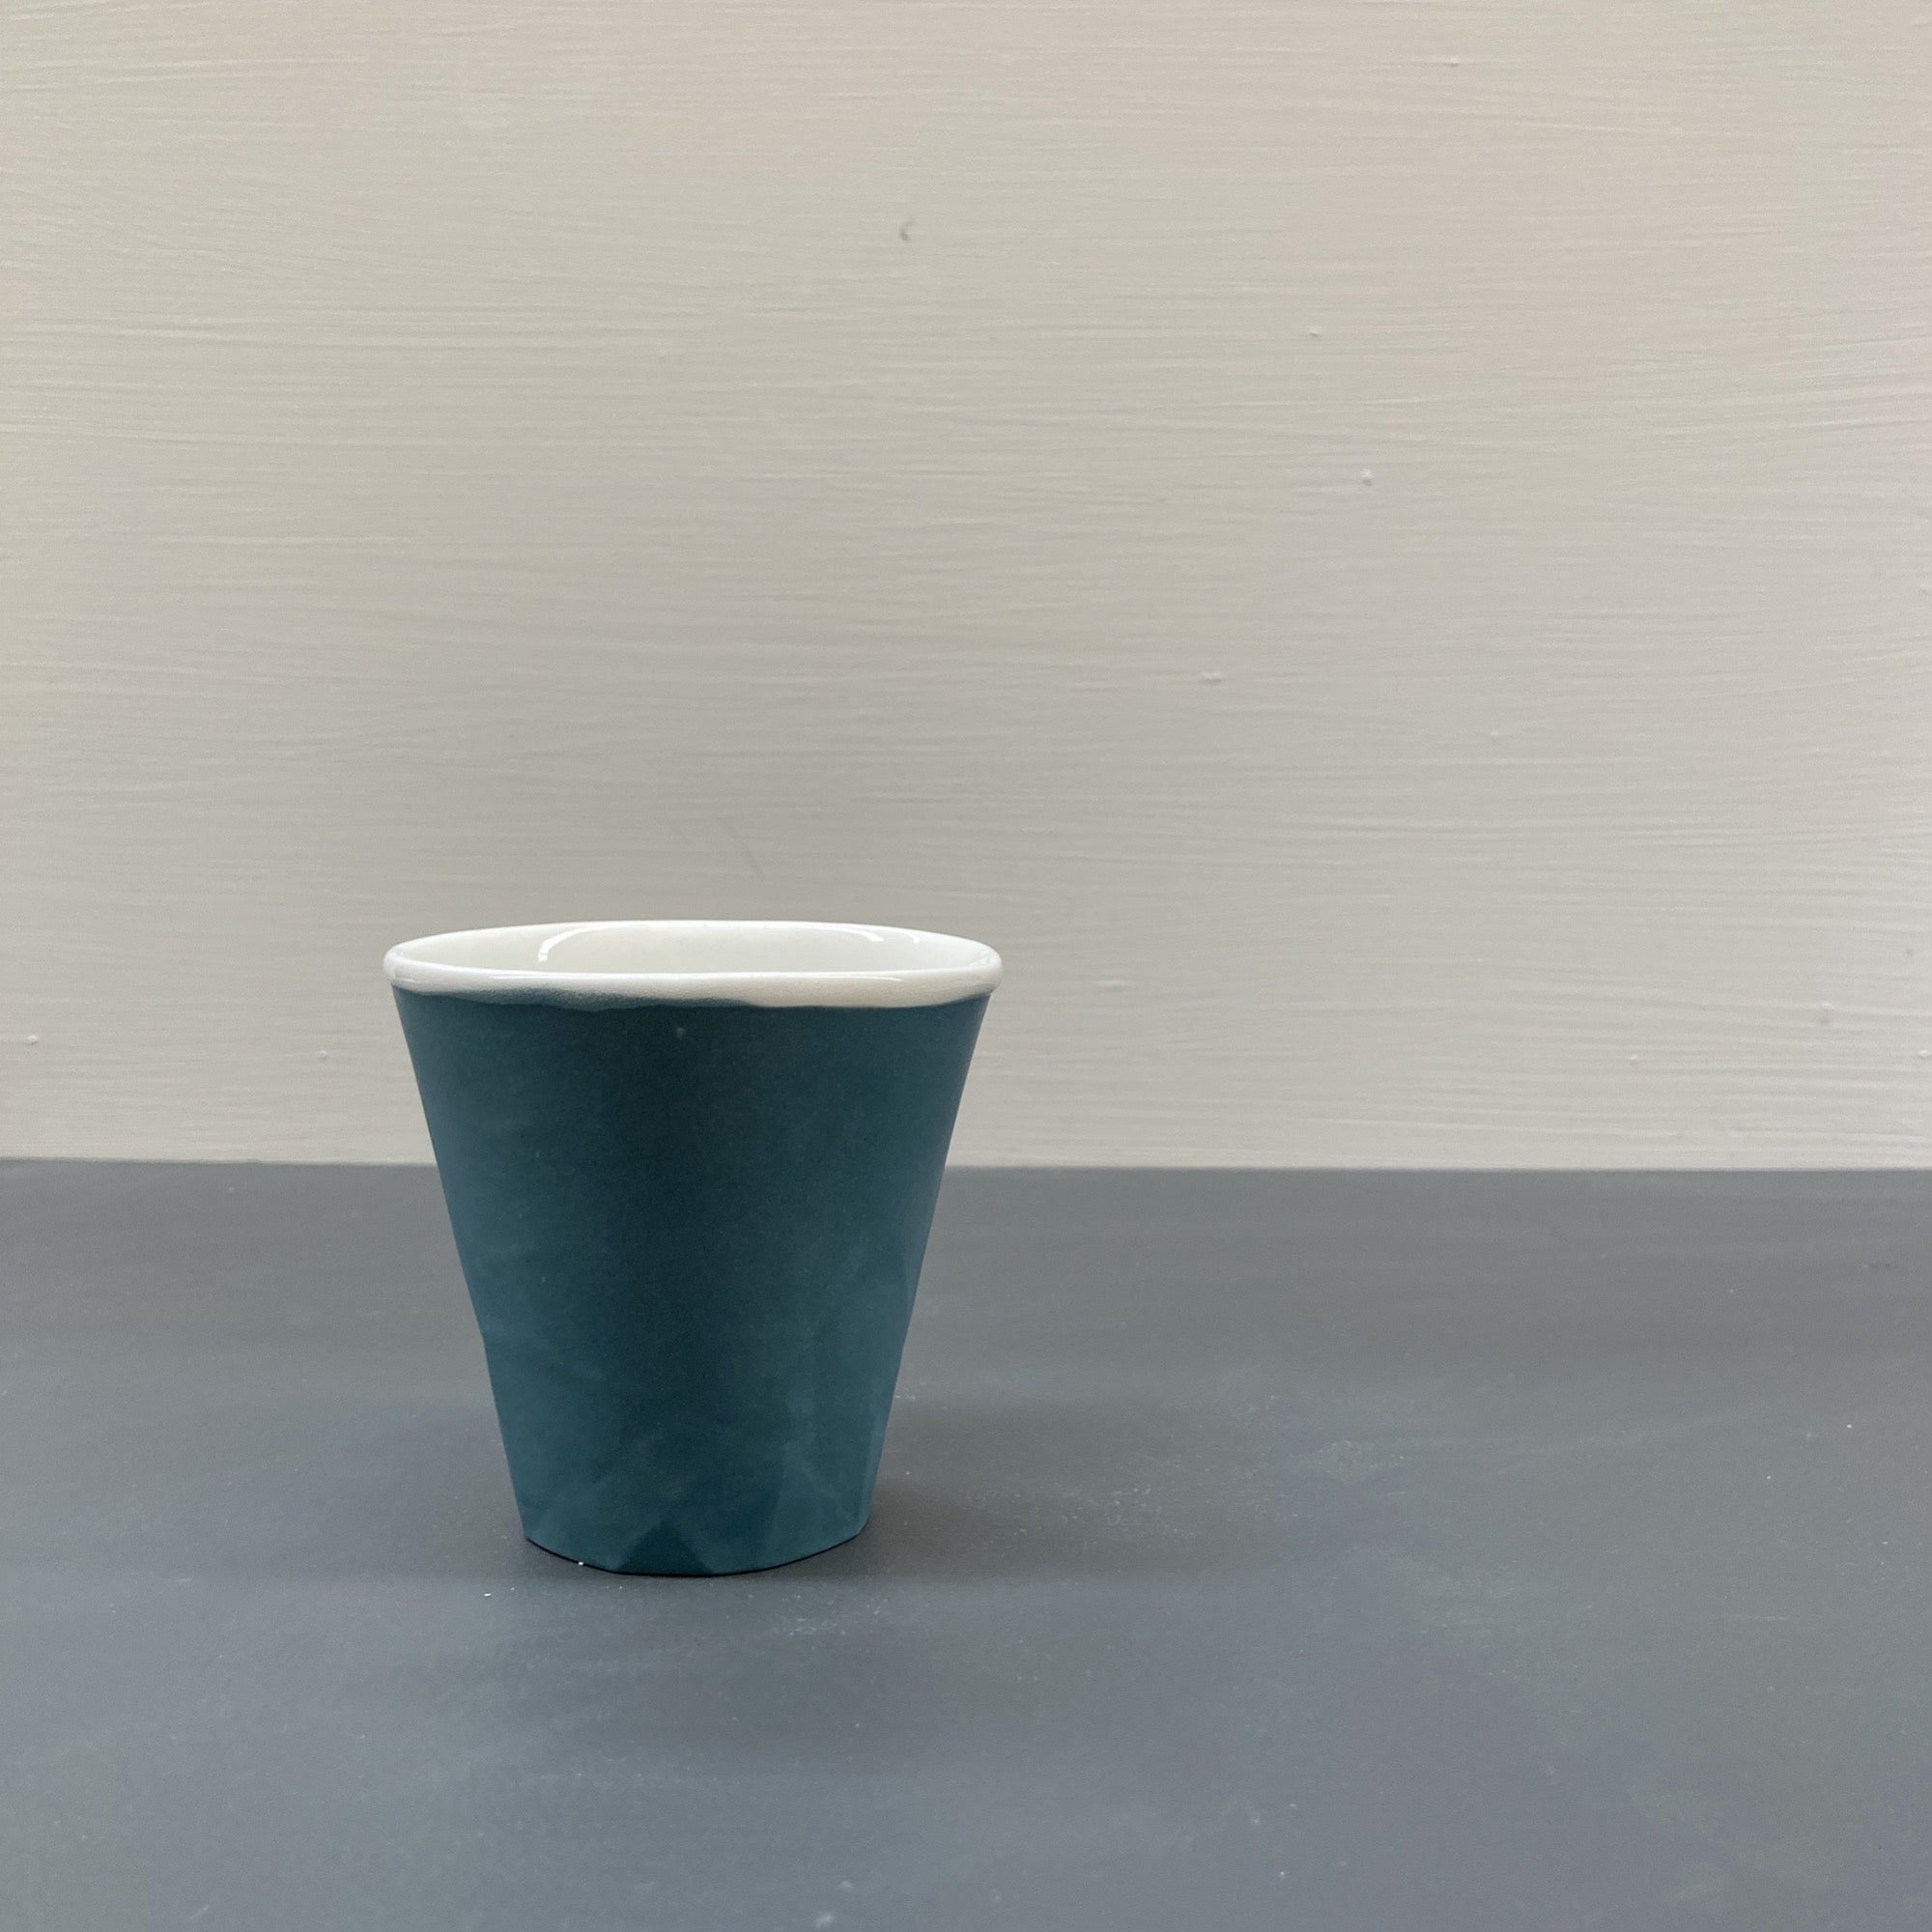 Ceramic Teal Paper Series Keep Cup